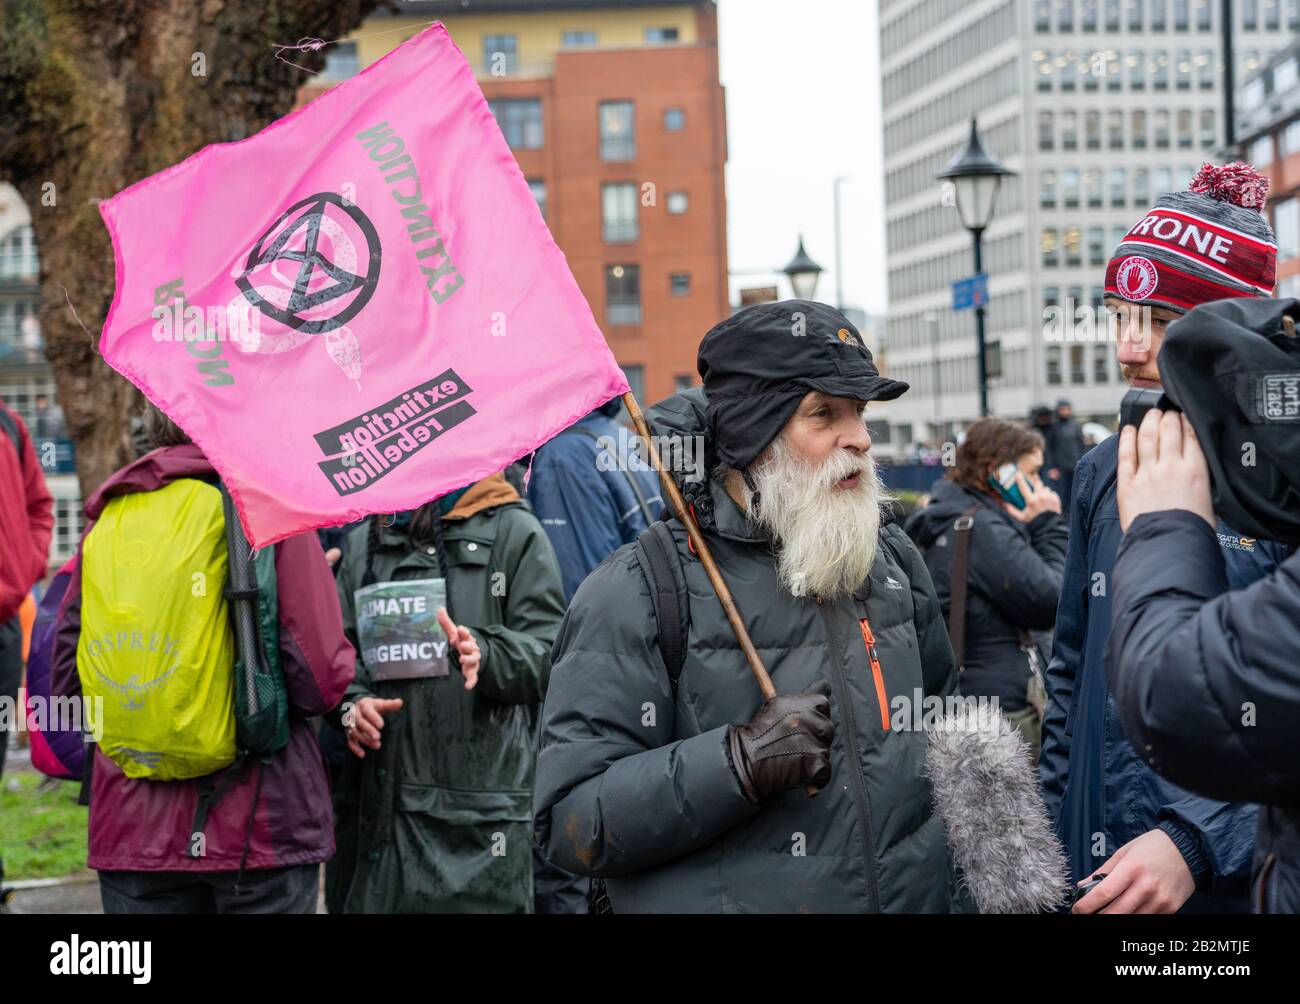 Extinction Rebellion Supporter in March for Climate and School Strike in Bristol UK 28. Feb. 2020, nachdem Greta Thumberg auf College Green gesprochen hatte Stockfoto